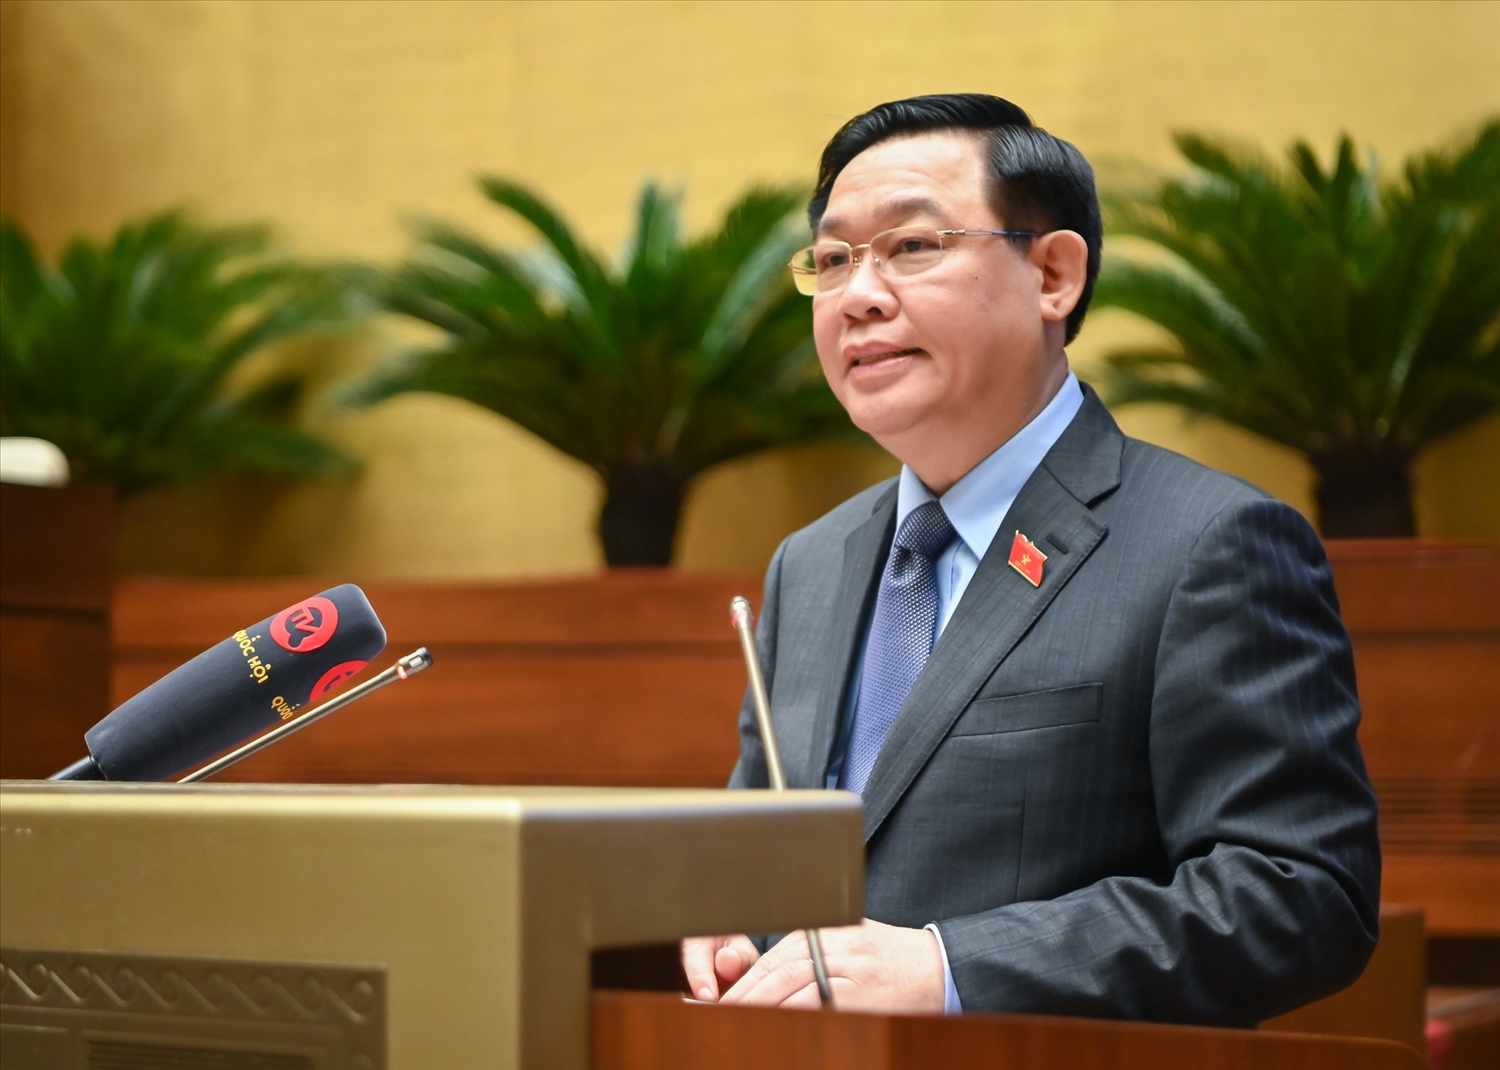 Chủ tịch Quốc hội Vương Đình Huệ phát biểu kết luận Hội nghị